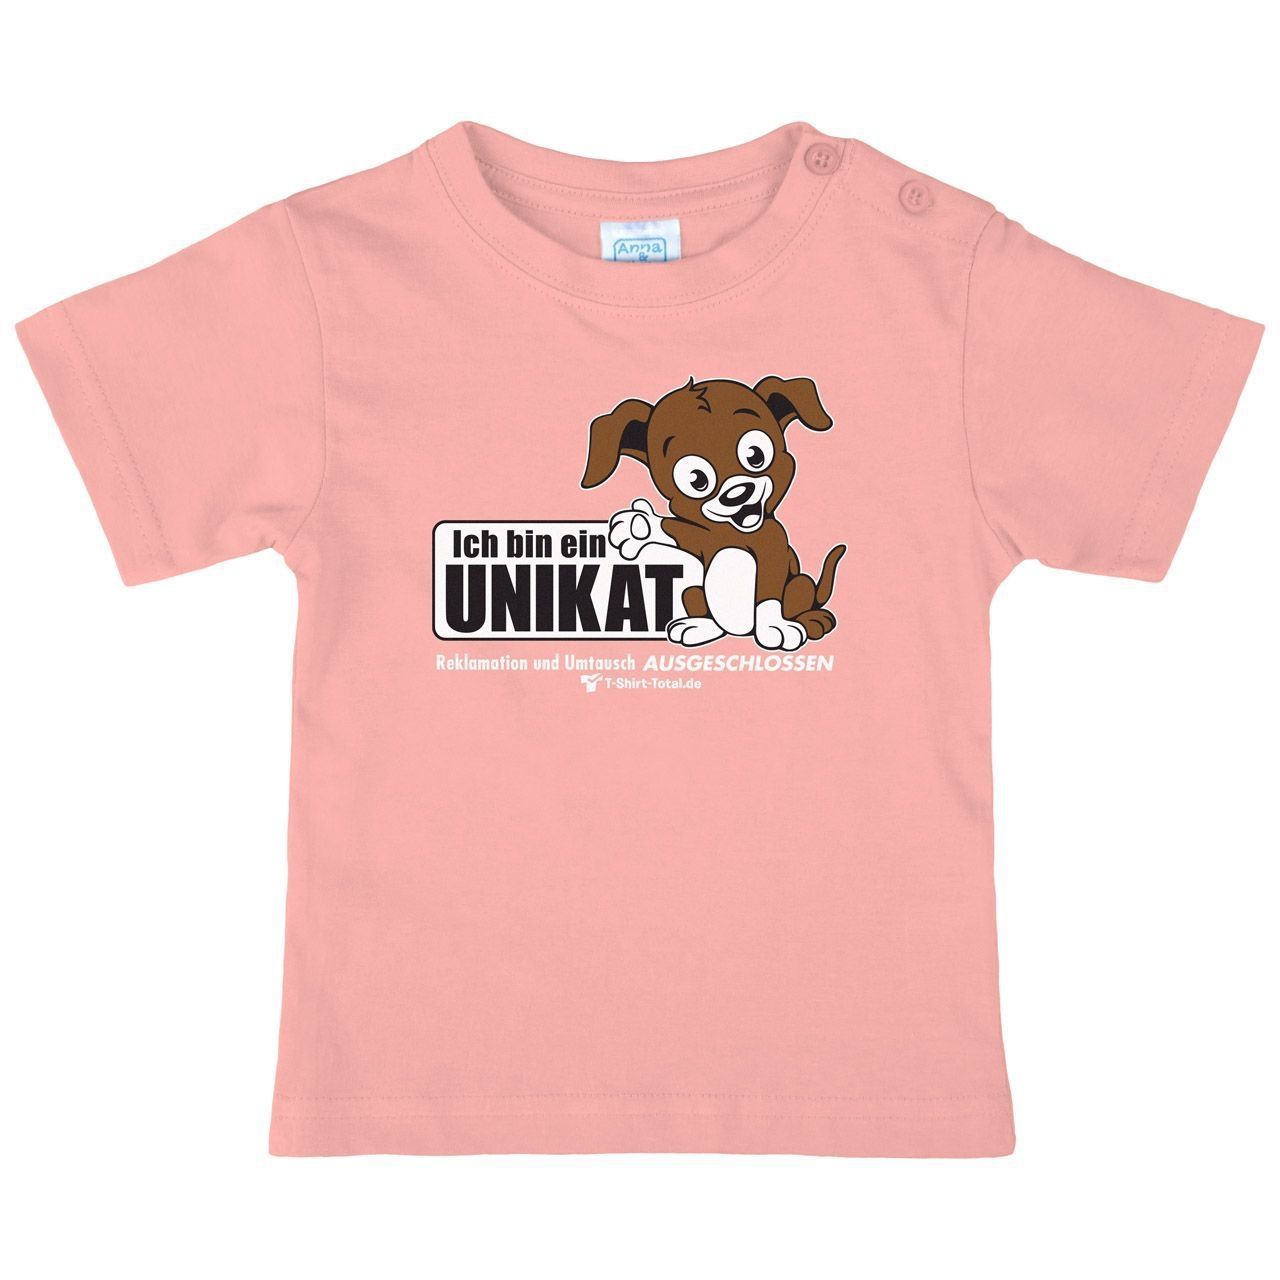 Unikat Kinder T-Shirt rosa 56 / 62